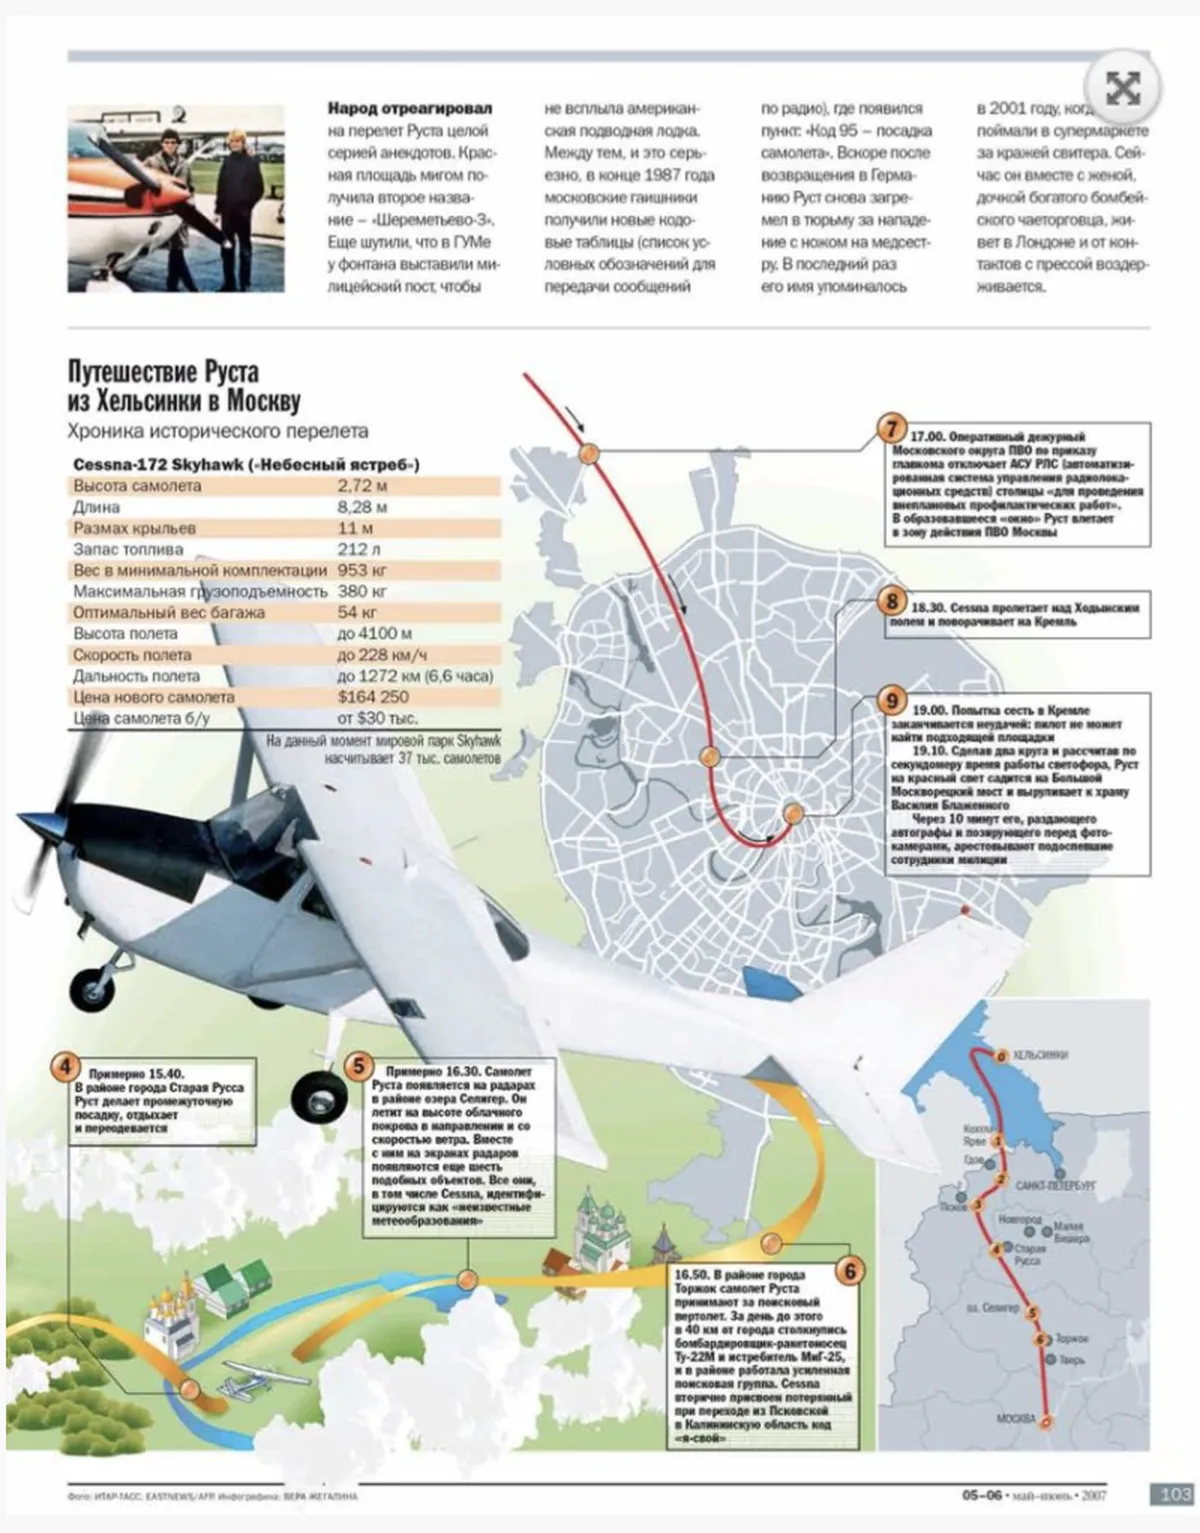 Хроника перелета немецкого пилота Матиаса Руста на лёгкомоторном самолёте из Хельсинки в Москву в 1987 году